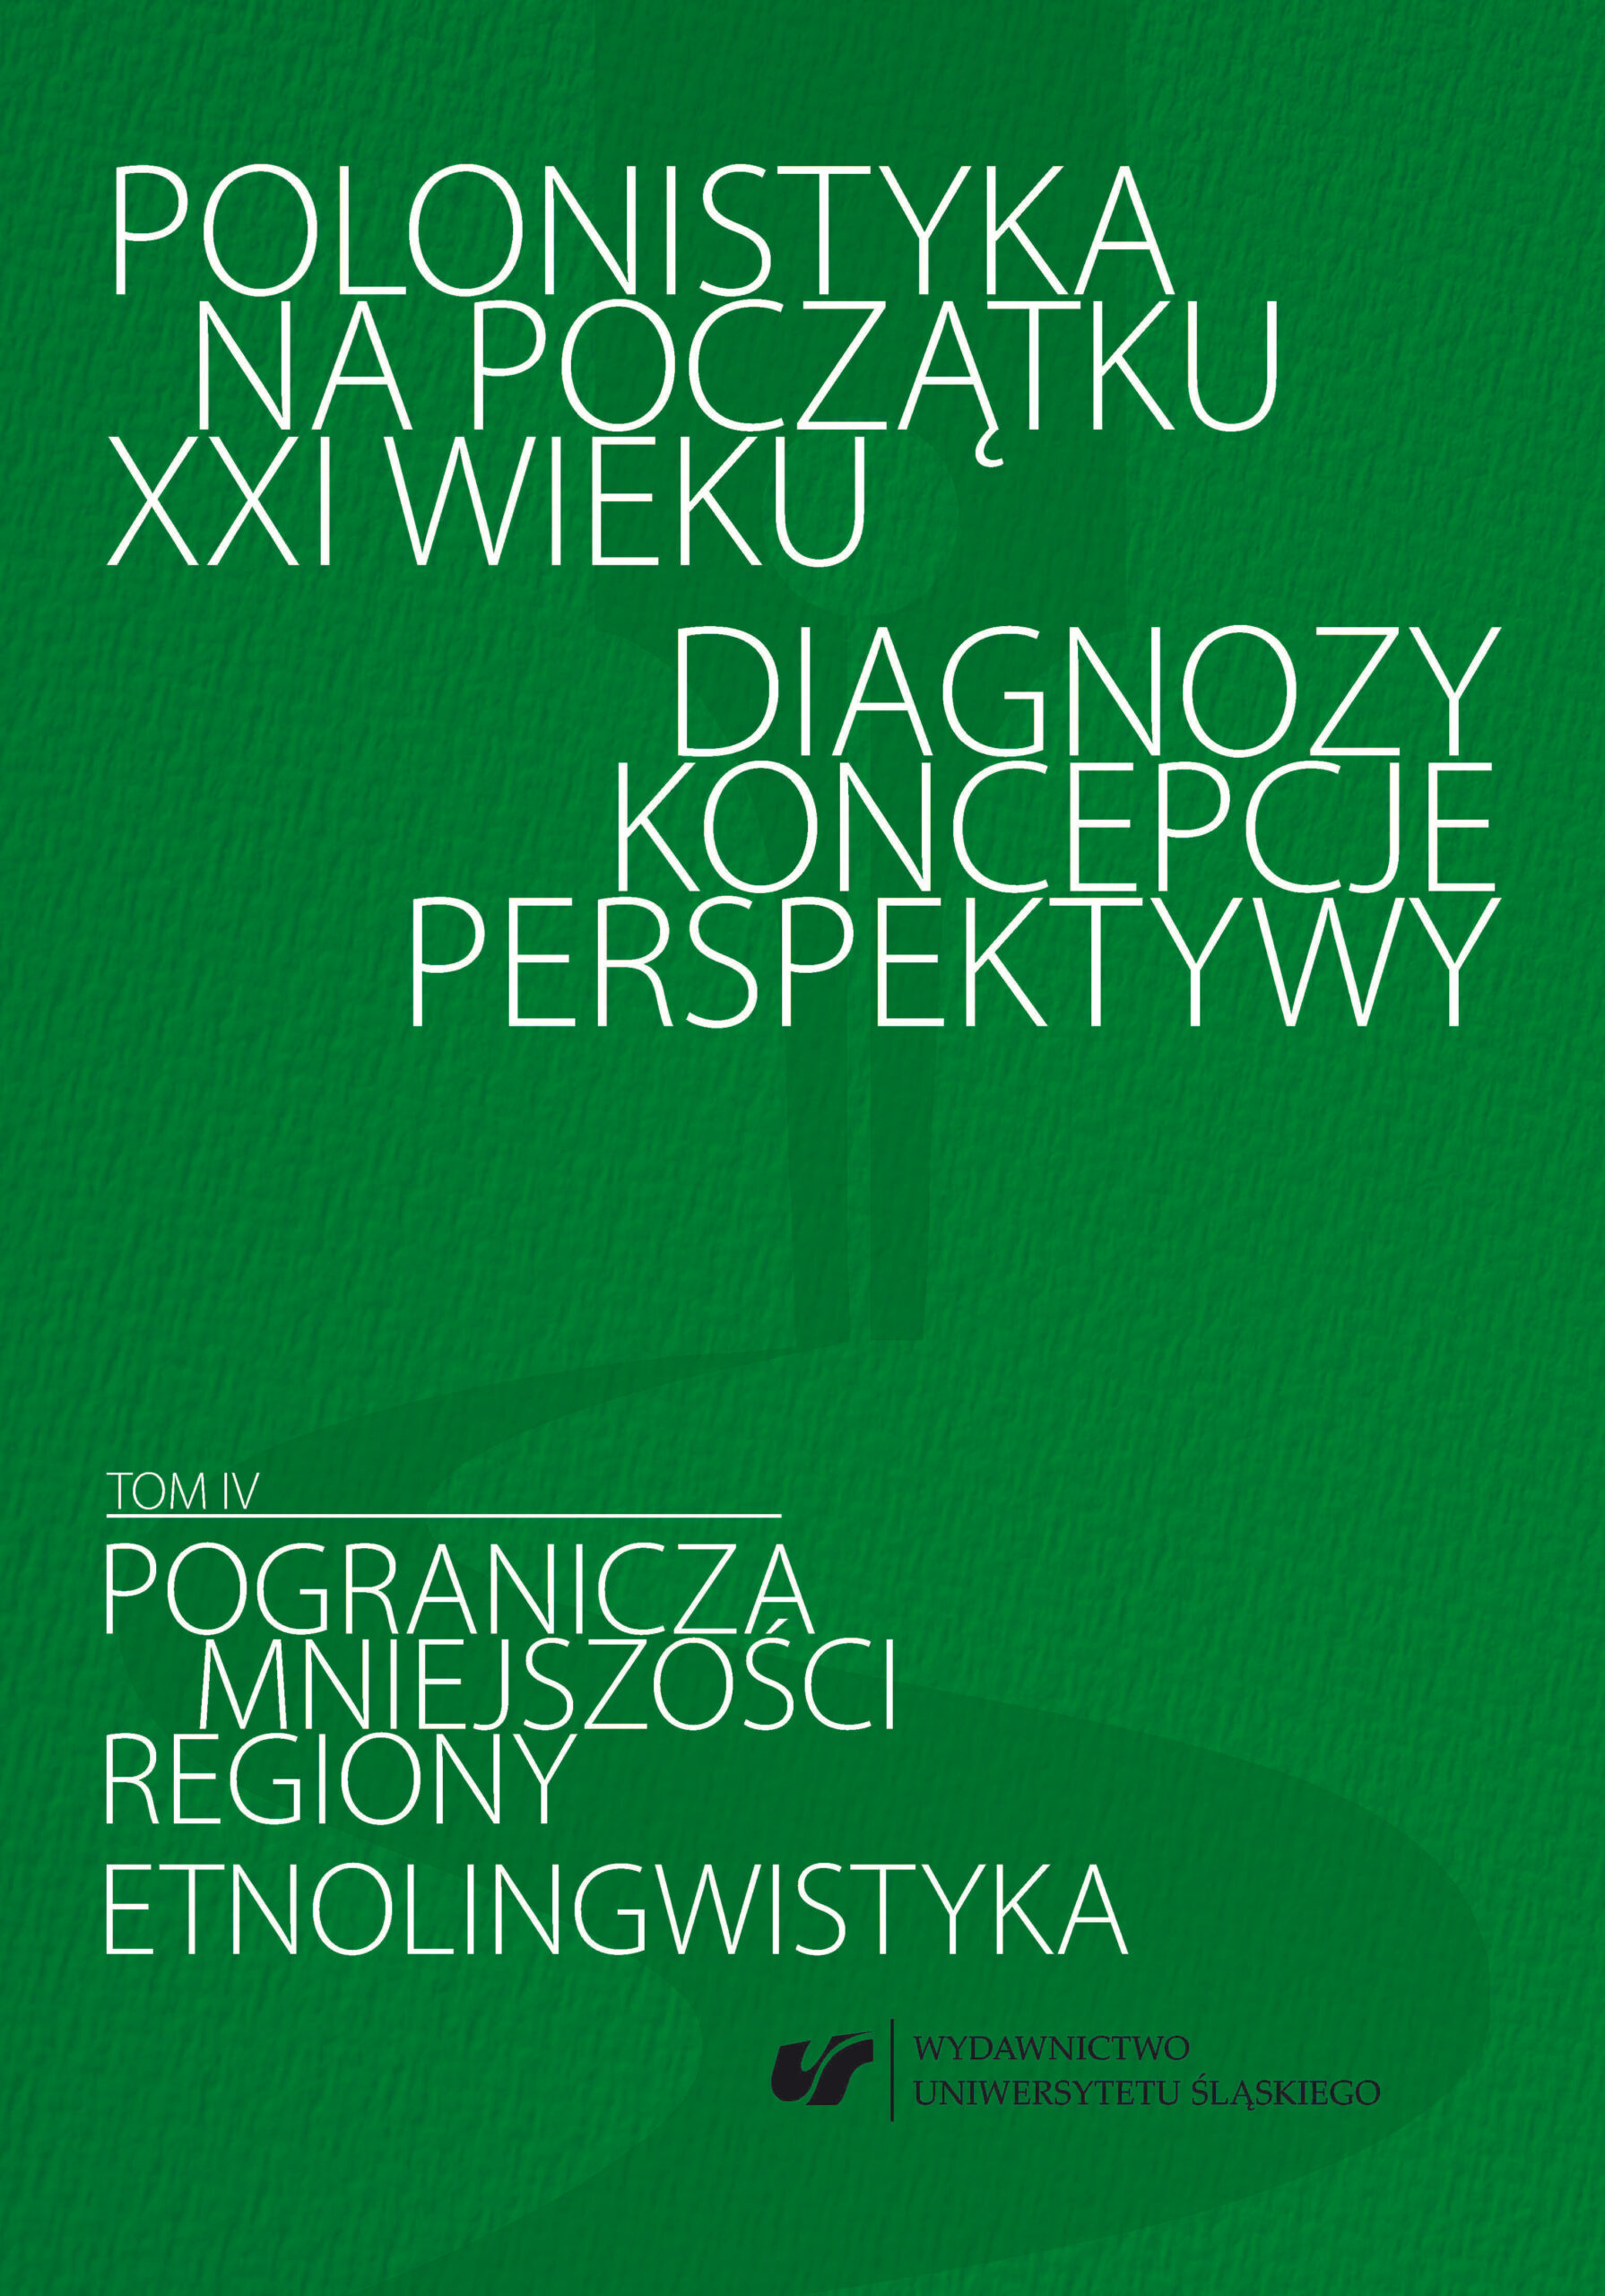 Polonistyka na początku XXI wieku Diagnozy Koncepcje Perspektywy Pogranicza, mniejszości, regiony, etnolingwistyka